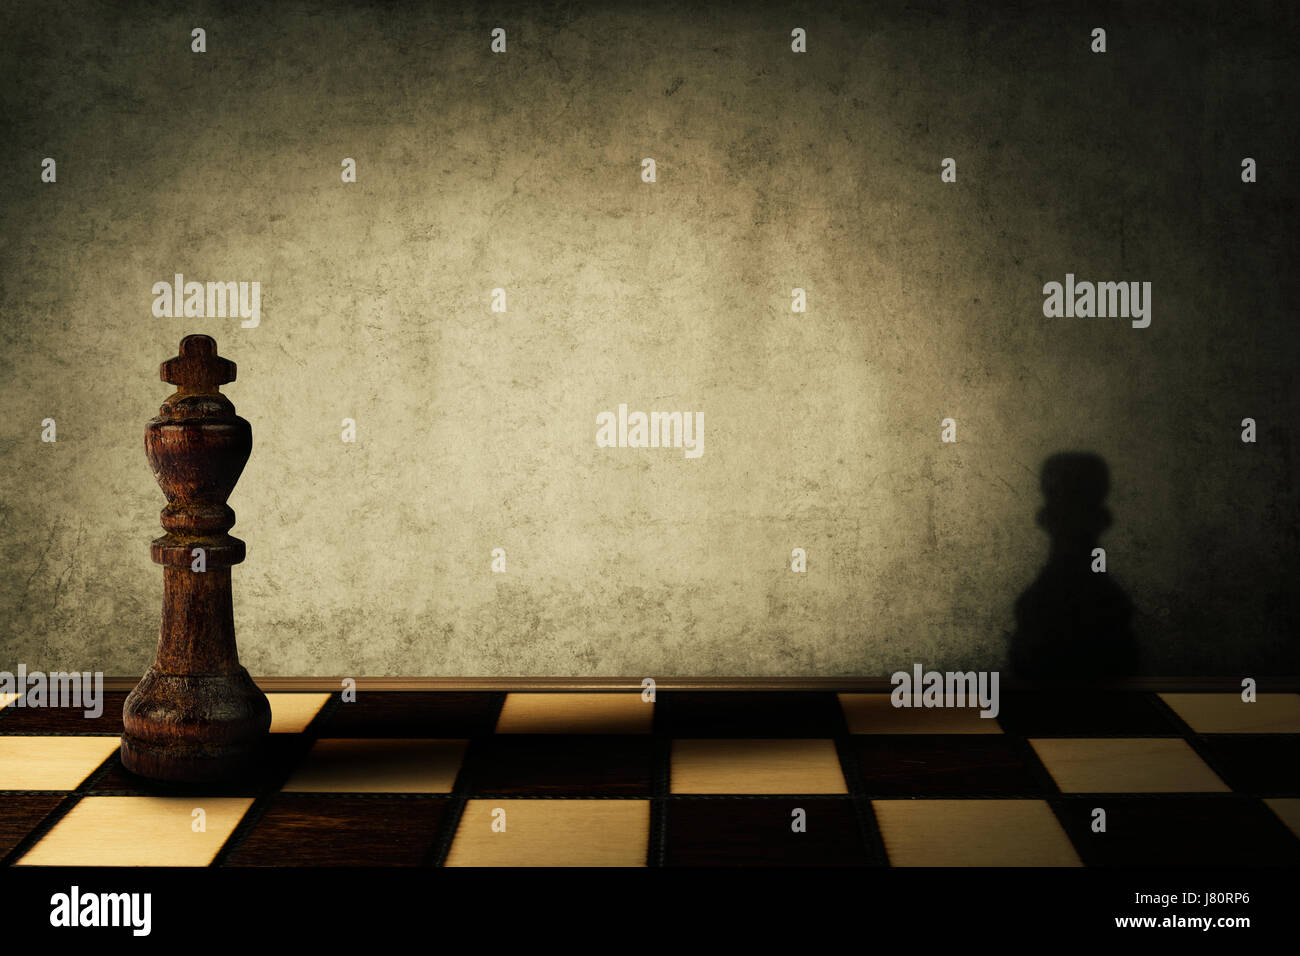 Rey Chess Piece una sombra de un peón en un muro de hormigón. Concepto complejo y la mala gestión. Transformación mágica. Foto de stock